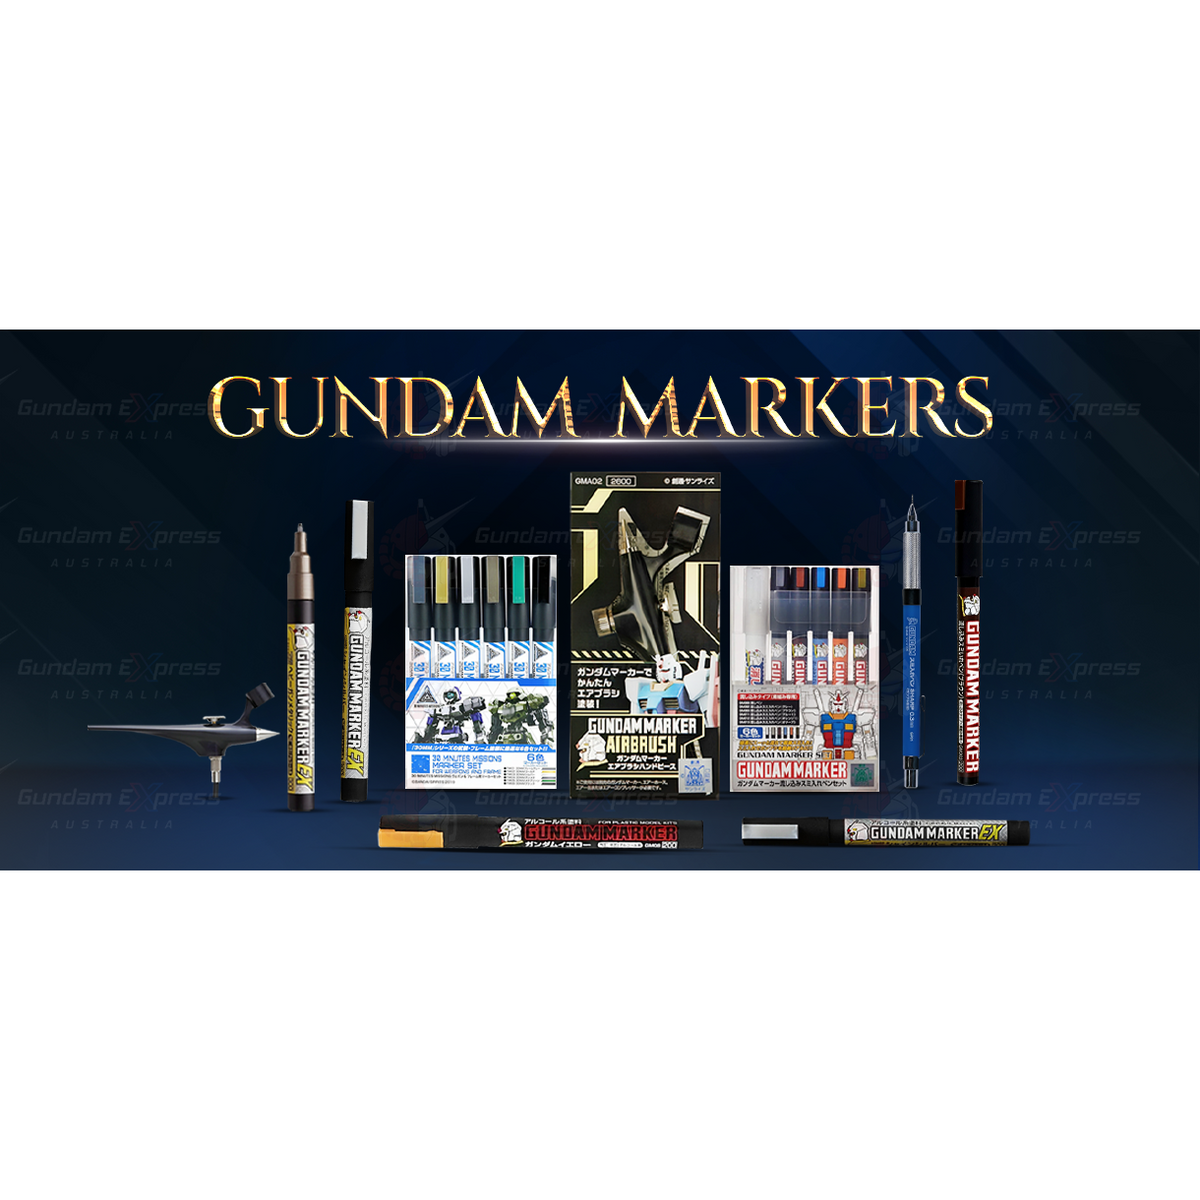 Gundam Marker: Black (Fine-tip for panel lines) (Renewal)